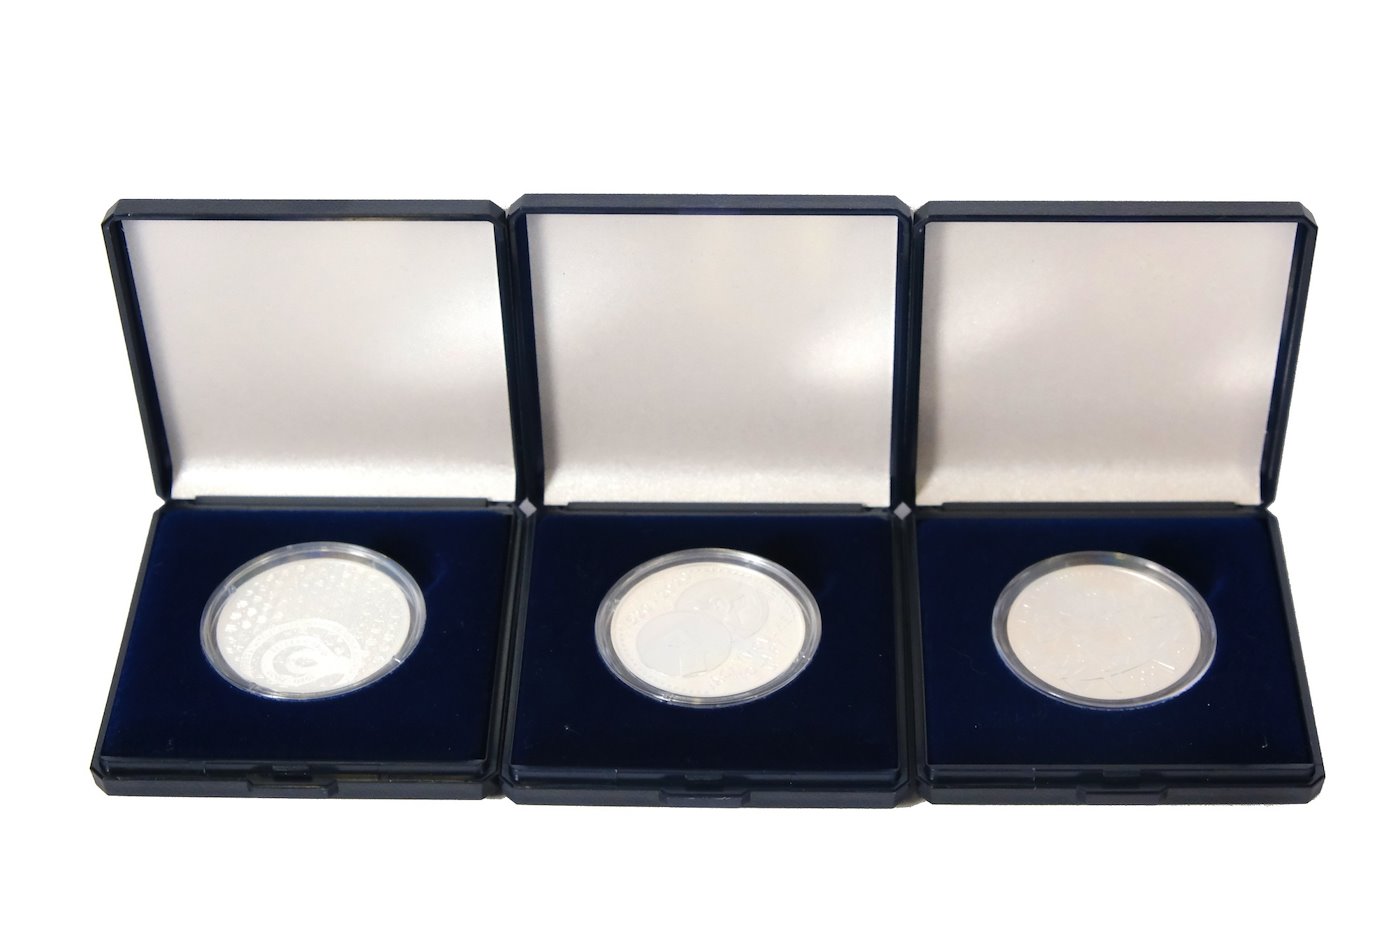 Mince - Konvolut 3 stříbrných investičních mincí v PROOF kvalitě, stříbro 3x 925/1000. Hrubá hmotnost 3x 13g